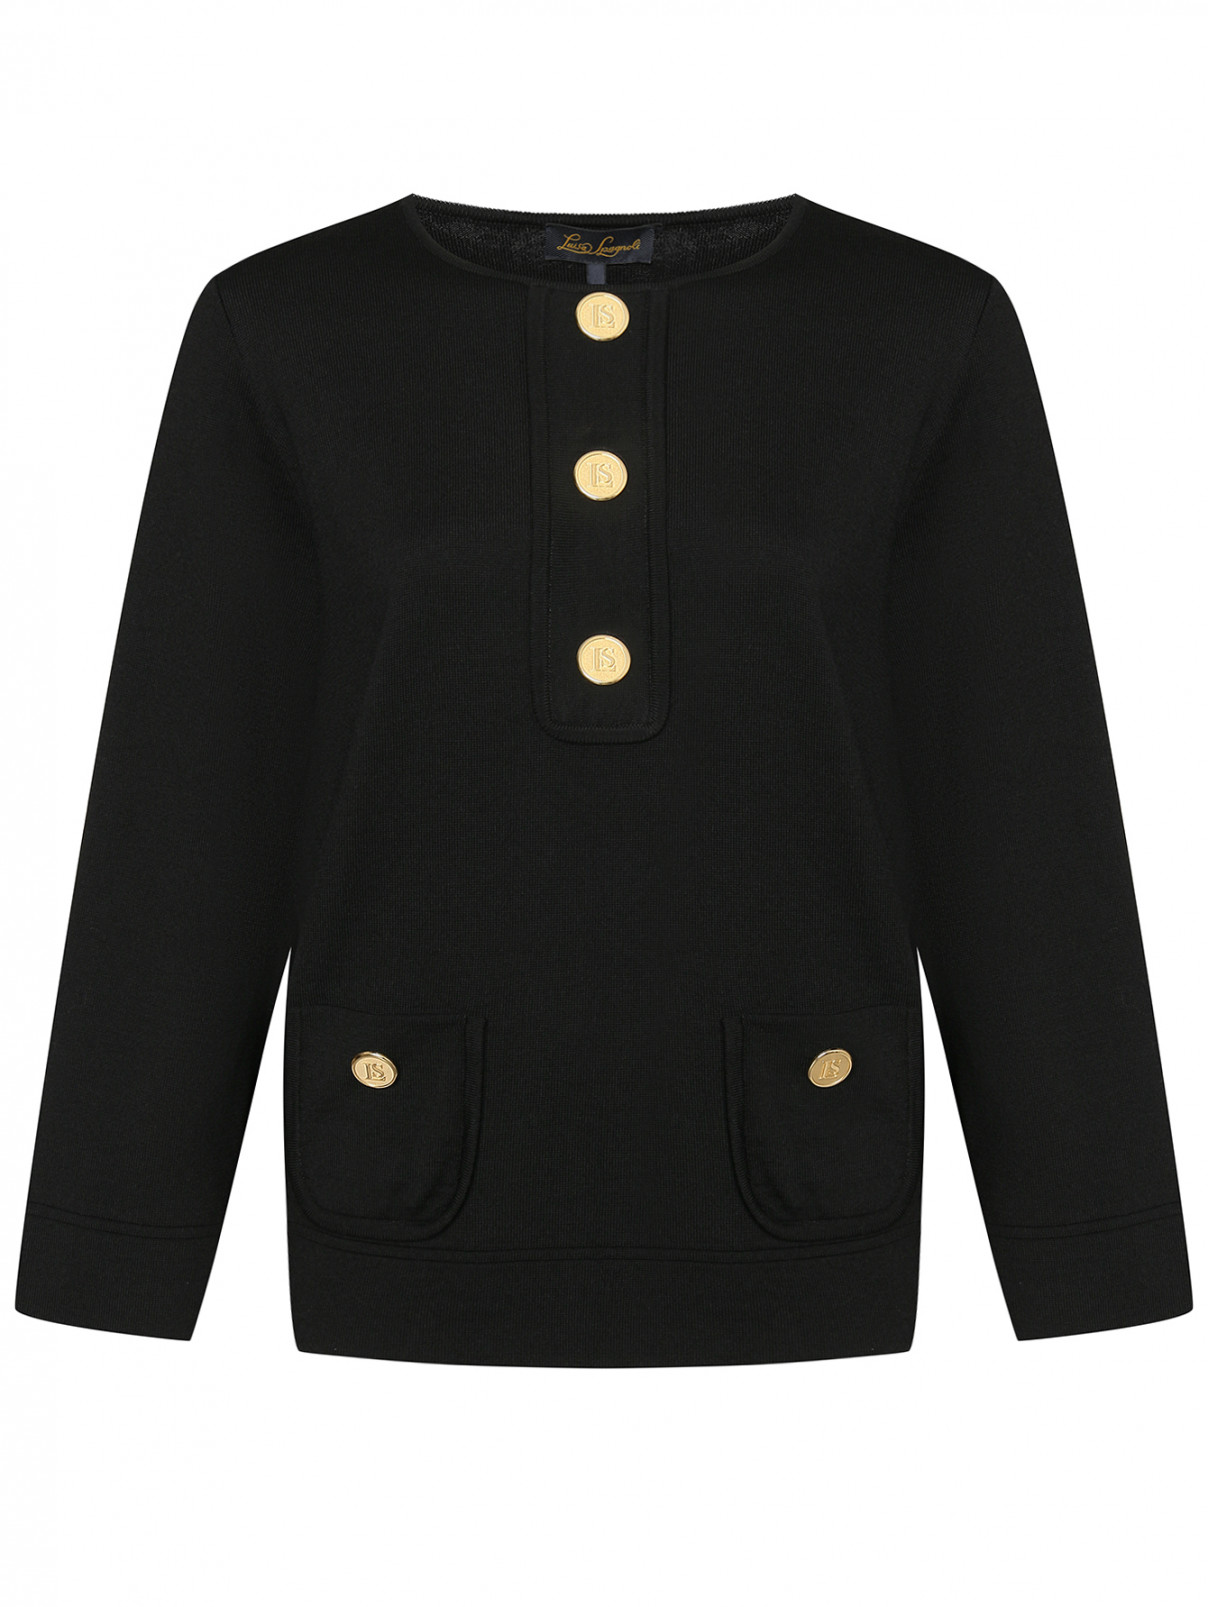 Джемпер из шерсти с карманами Luisa Spagnoli  –  Общий вид  – Цвет:  Черный